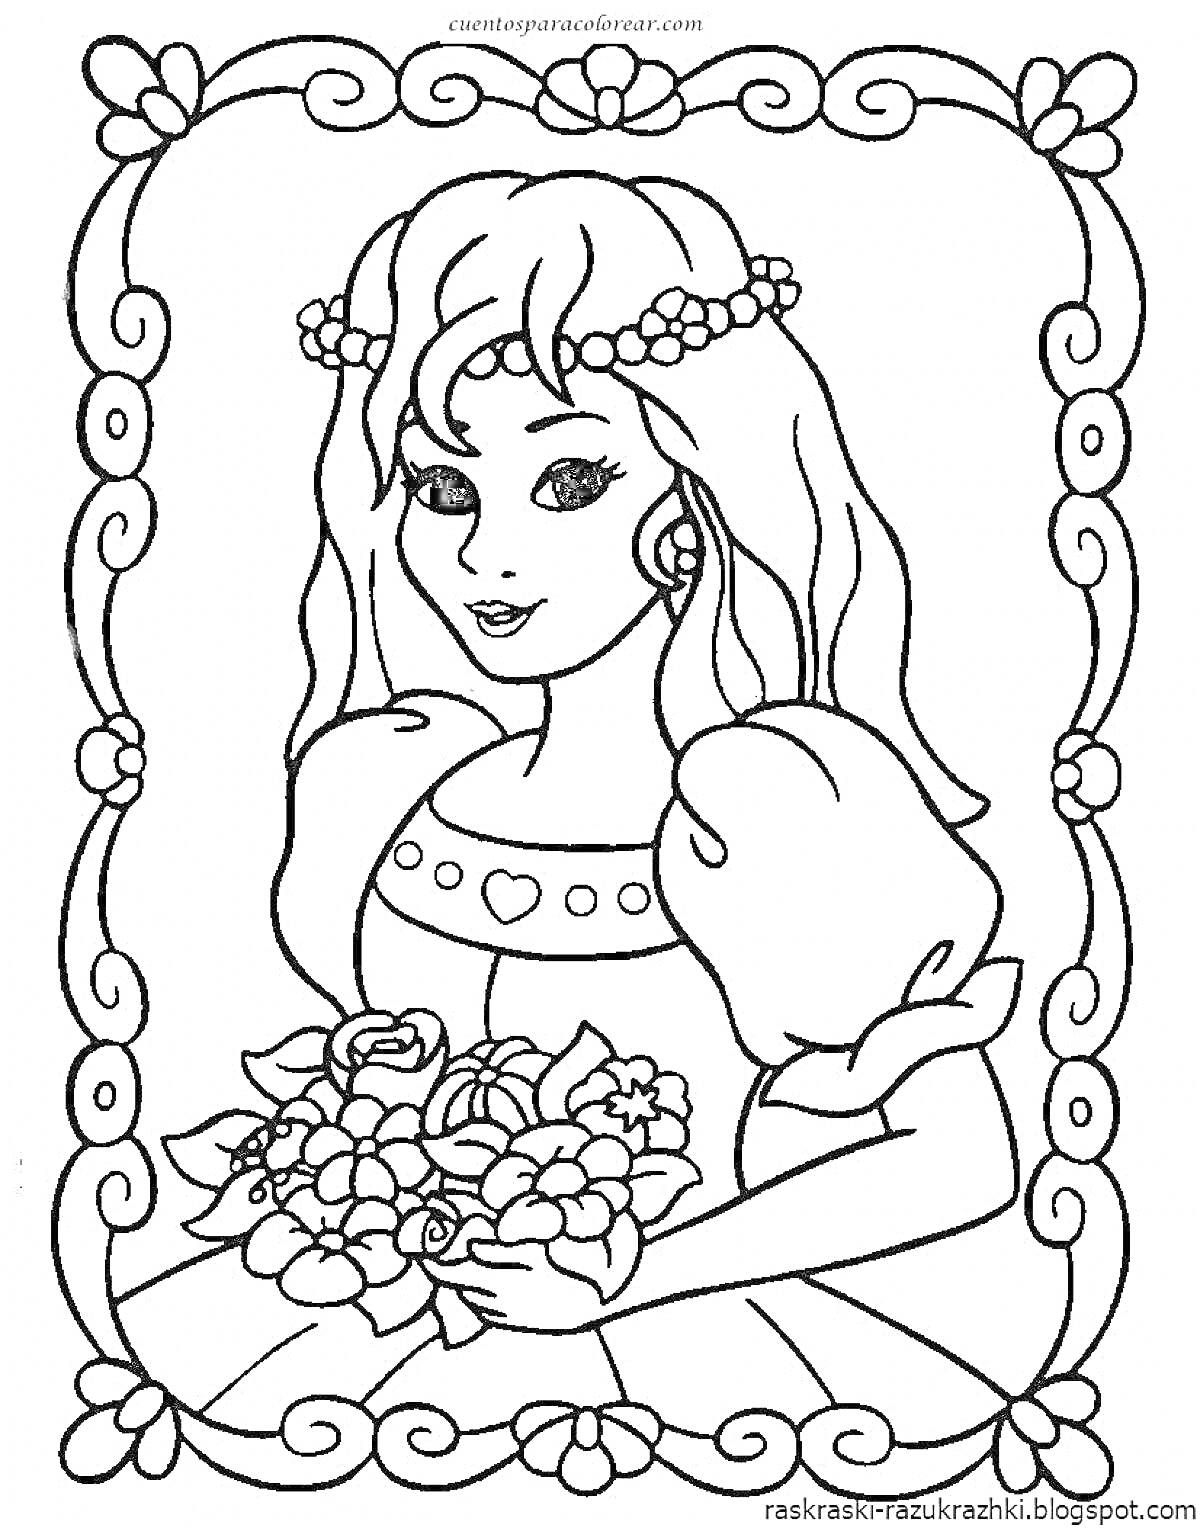 Раскраска Принцесса в раме с цветами, держащая букет, обрамление из цветов